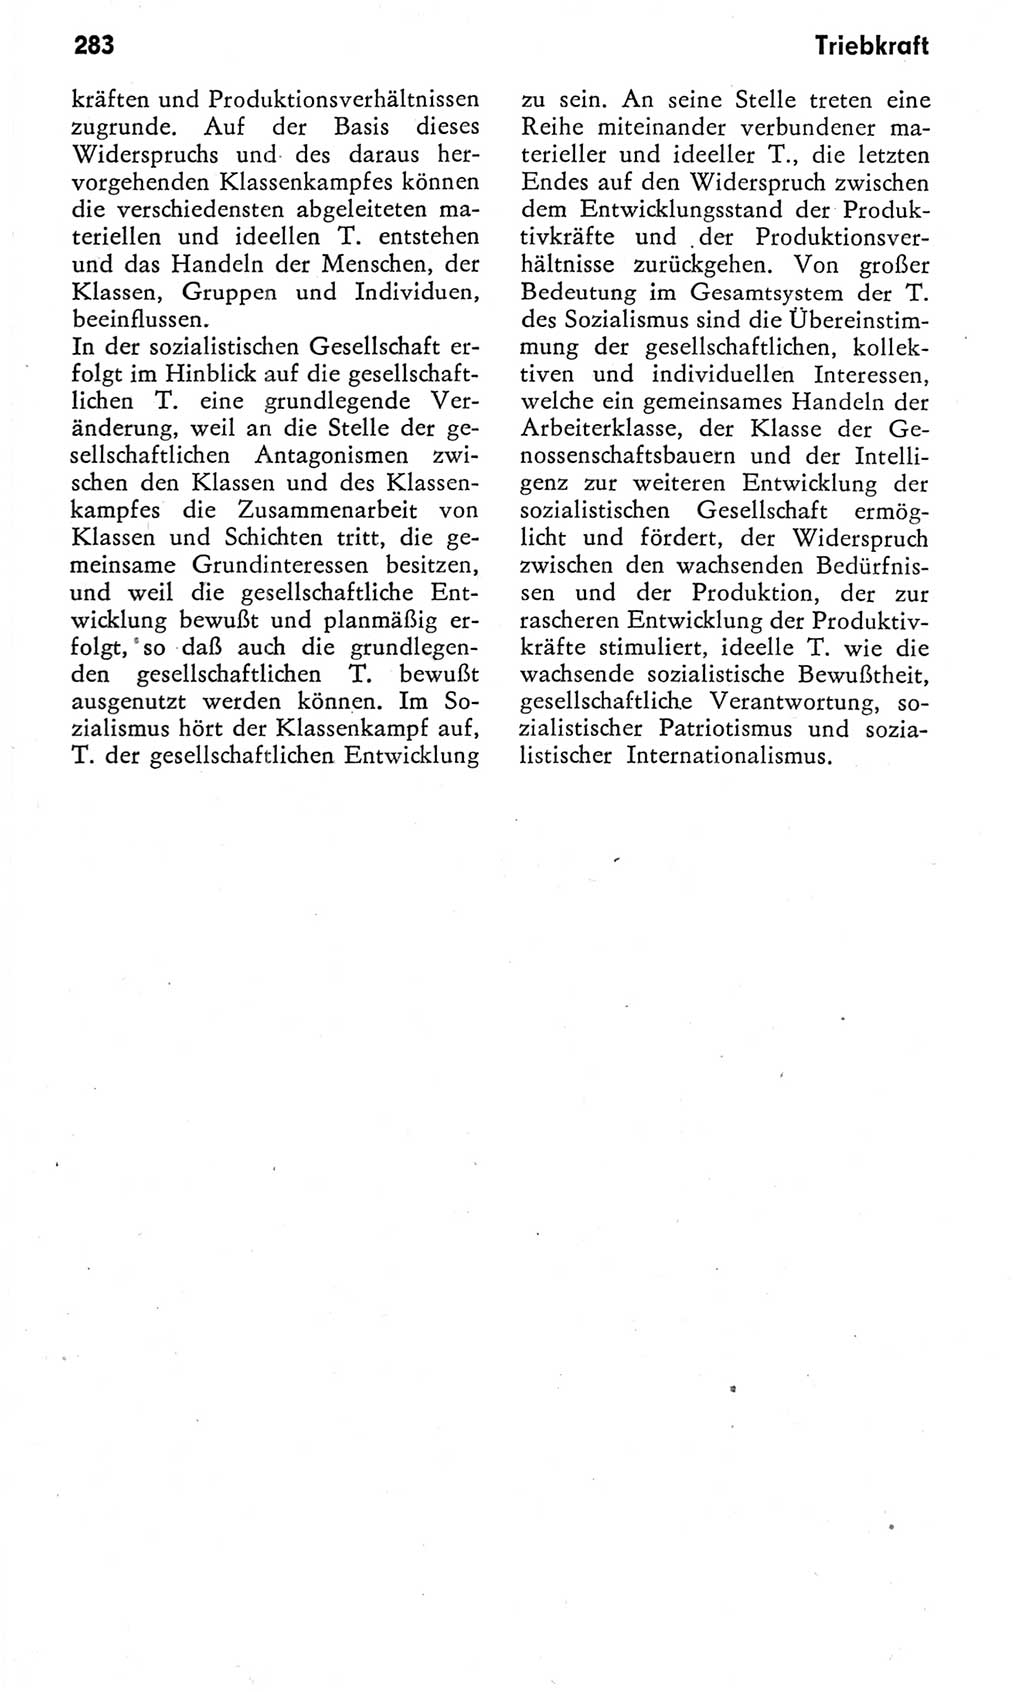 Kleines Wörterbuch der marxistisch-leninistischen Philosophie [Deutsche Demokratische Republik (DDR)] 1975, Seite 283 (Kl. Wb. ML Phil. DDR 1975, S. 283)